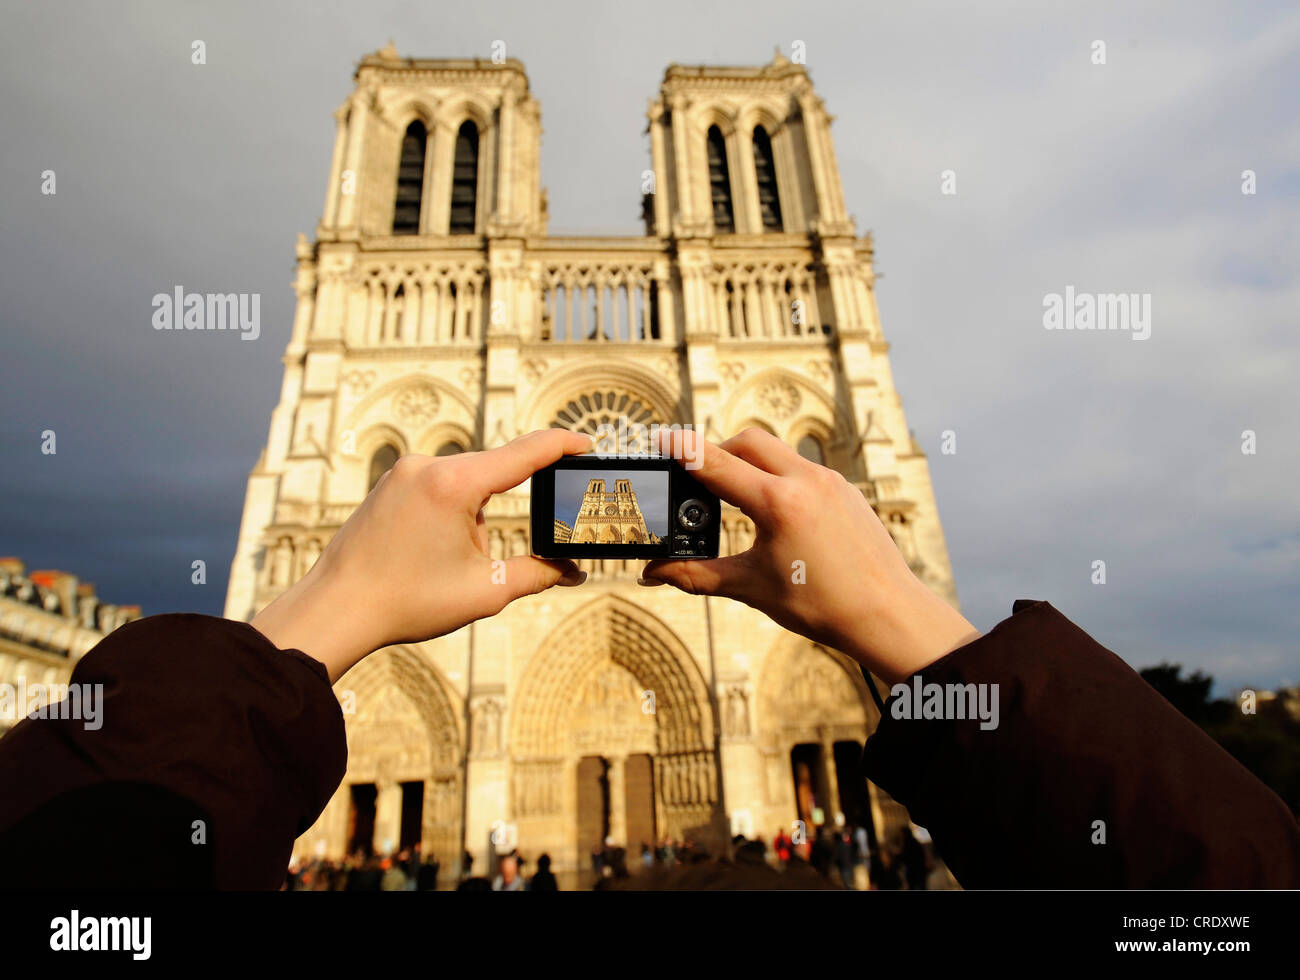 Image touristique de Notre Dame de Paris, façade occidentale, France, Paris Banque D'Images